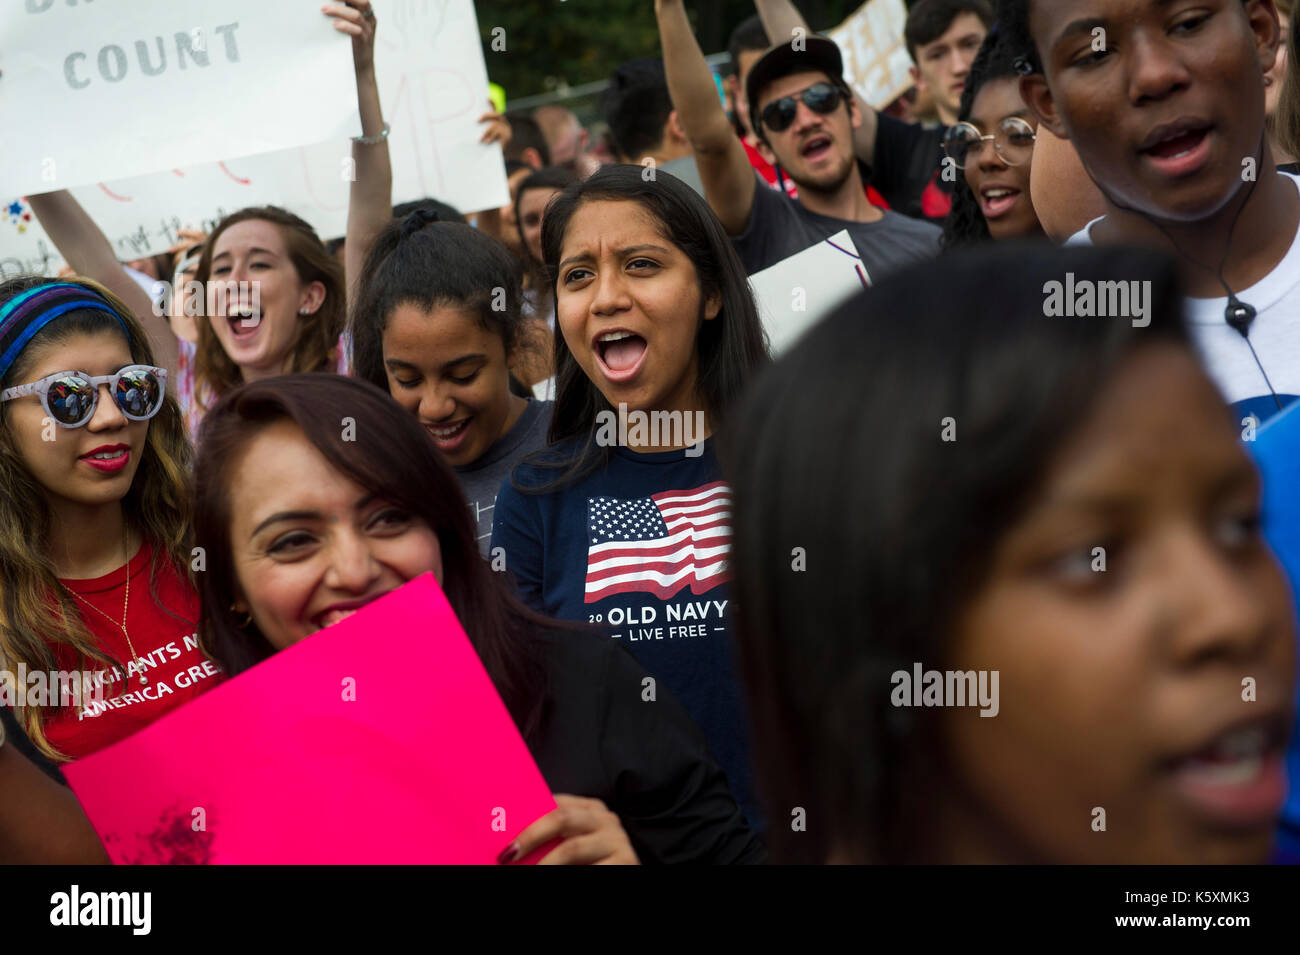 Eine junge Dame chanting anti Trump Slogans während des Protestes. Eine kleine Menge versammelt sich vor dem Weißen Haus Präsident Donald Trump Absicht zurückzutreten, die Nachträglichkeit für die Kindheit Ankünfte Act, auch als DACA oder der Traum Handeln bekannt zu protestieren. Latente Aktion für die Kindheit Ankünfte (DACA) ist eine Art der administrativen Entlastung von der Deportation. Der Zweck der DACA berechtigt ist, ausländische Jugendliche, die in die Vereinigten Staaten kam, als sie Kinder waren vor der Deportation zu schützen. DACA gibt jungen Immigranten ohne Papiere: 1) Schutz vor Abschiebung, und 2) eine Arbeitserlaubnis. Das Programm läuft ein Stockfoto